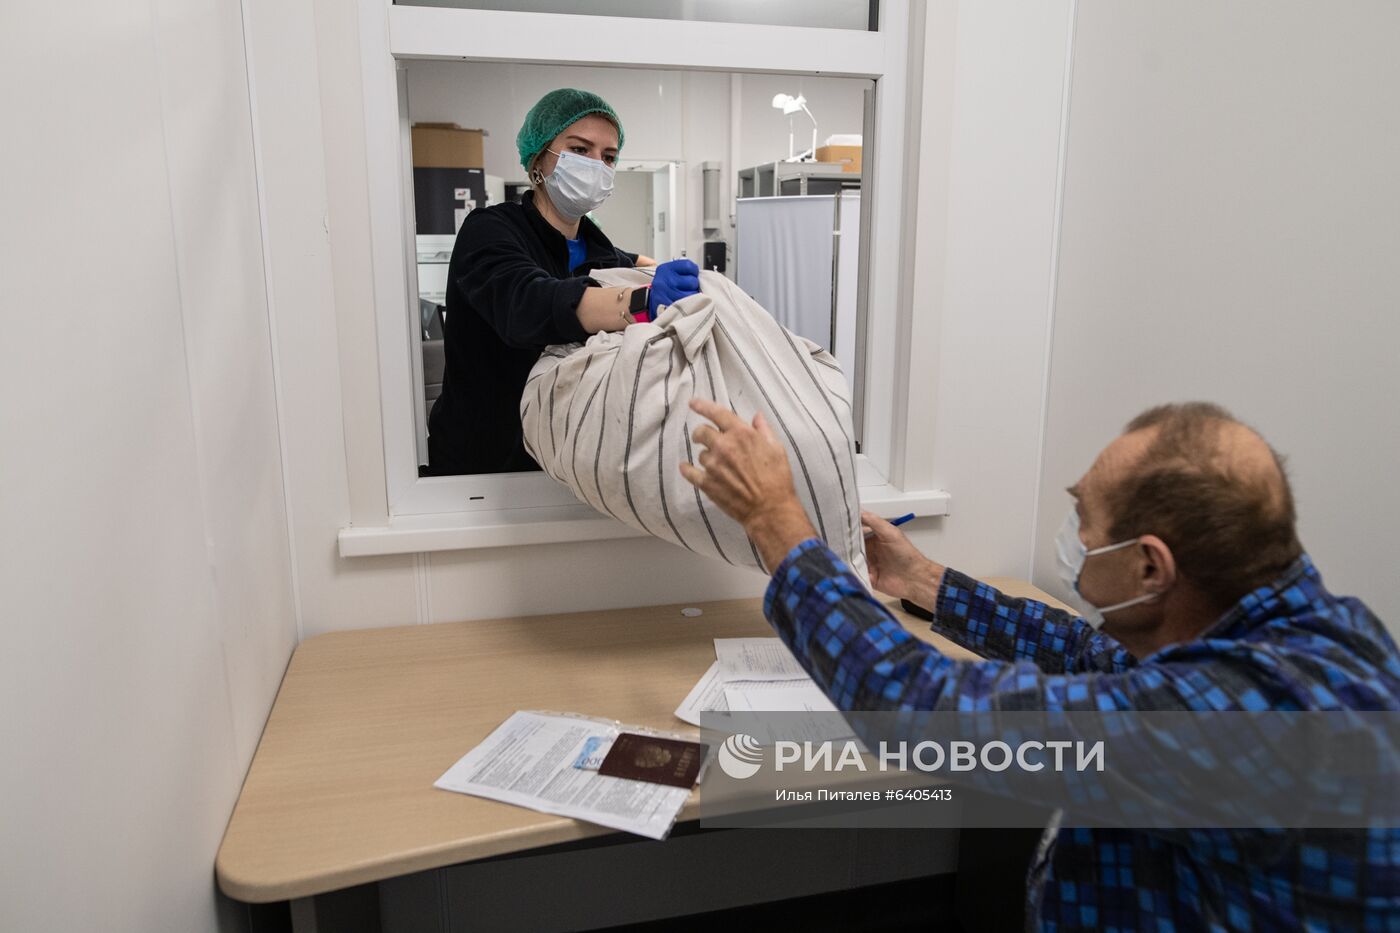 Госпиталь для больных COVID-19 в МКЦИБ "Вороновское"